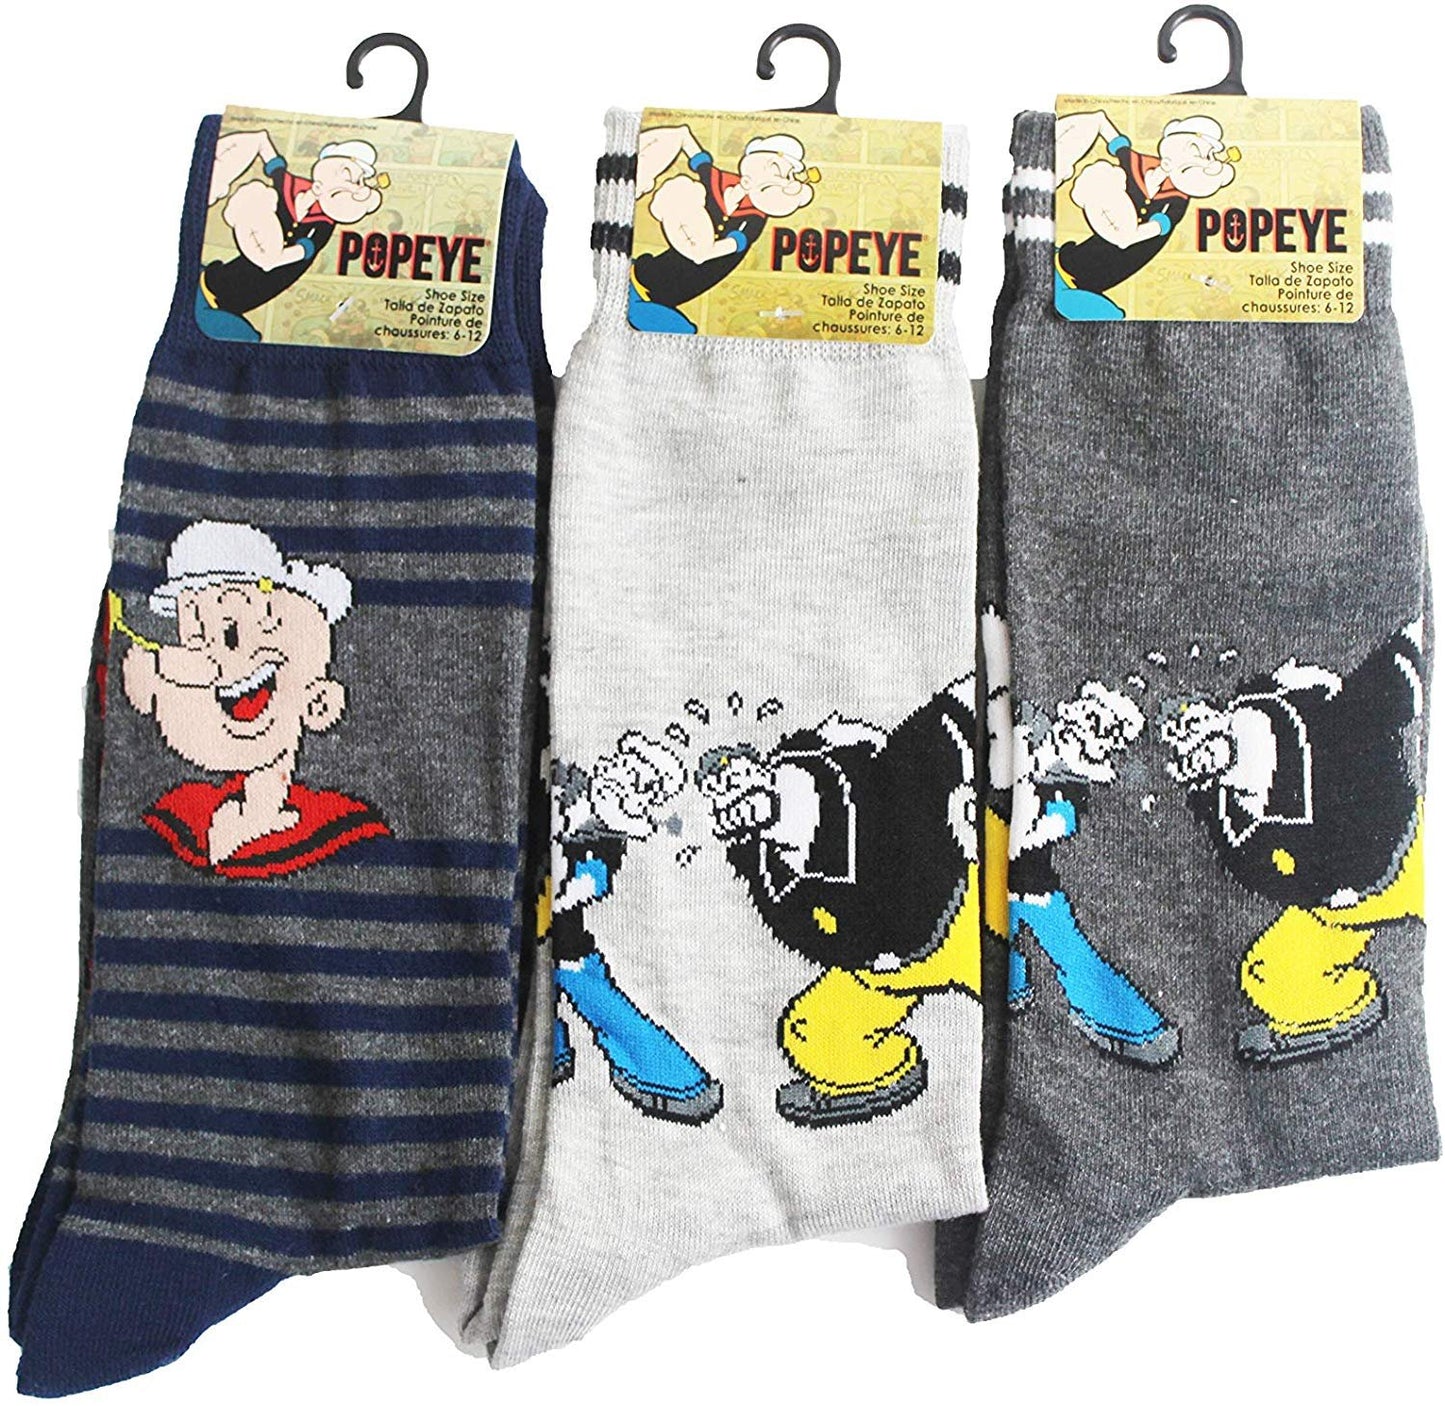 Popeye the Sailor Man Unisex 3-Pack Crew Socks